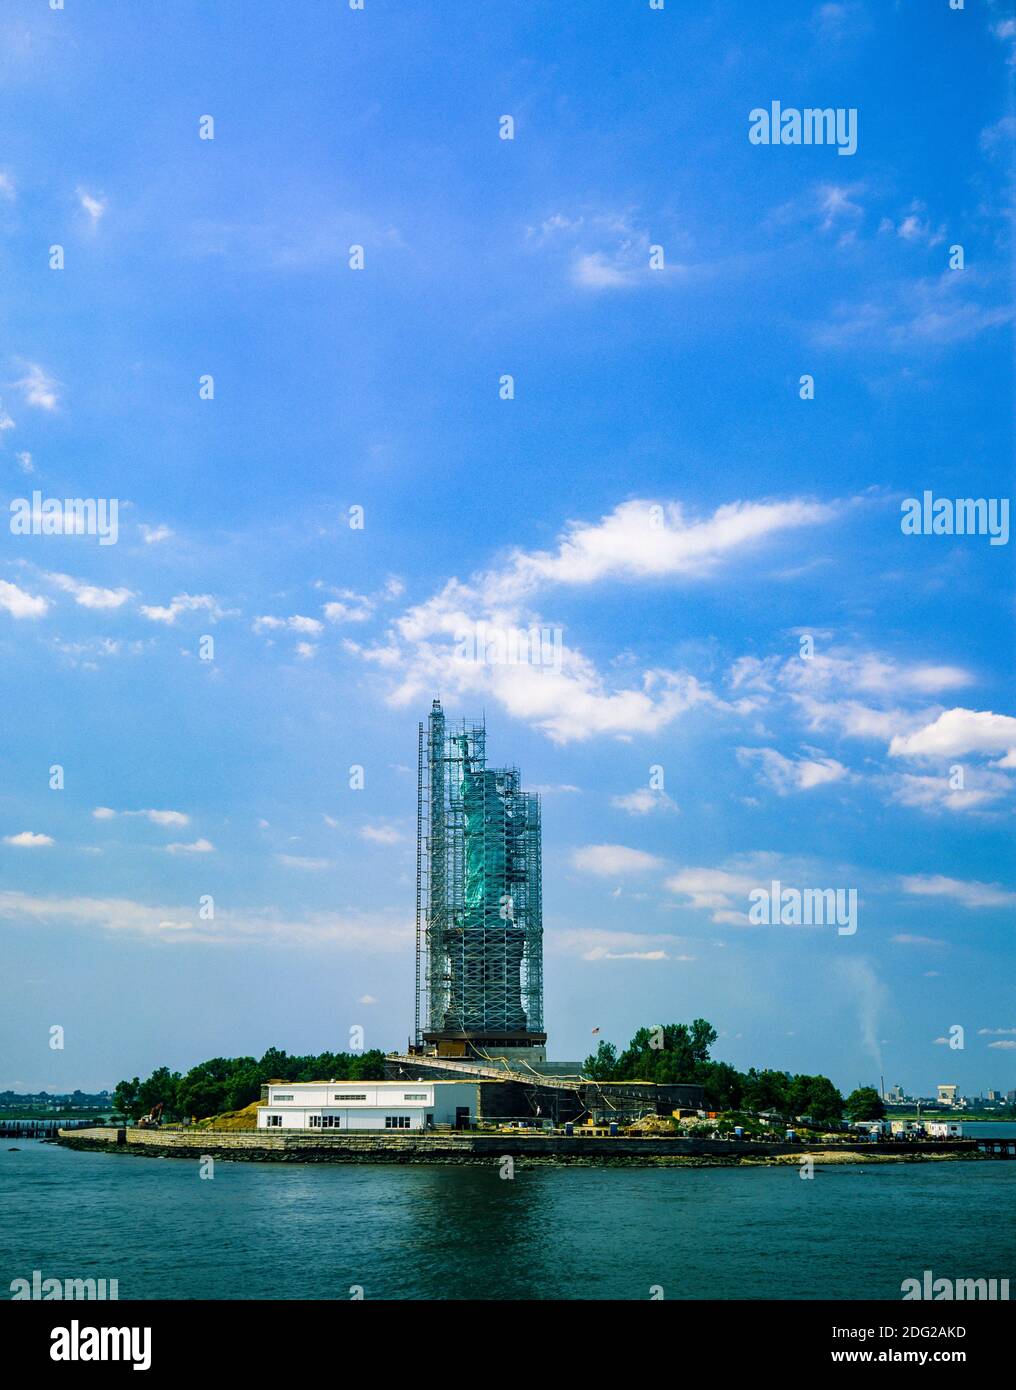 New York 1985, statue de la liberté, échafaudage de rénovation, chantier de construction, Liberty Island, New York City, NY, NYC, Etats-Unis, Banque D'Images